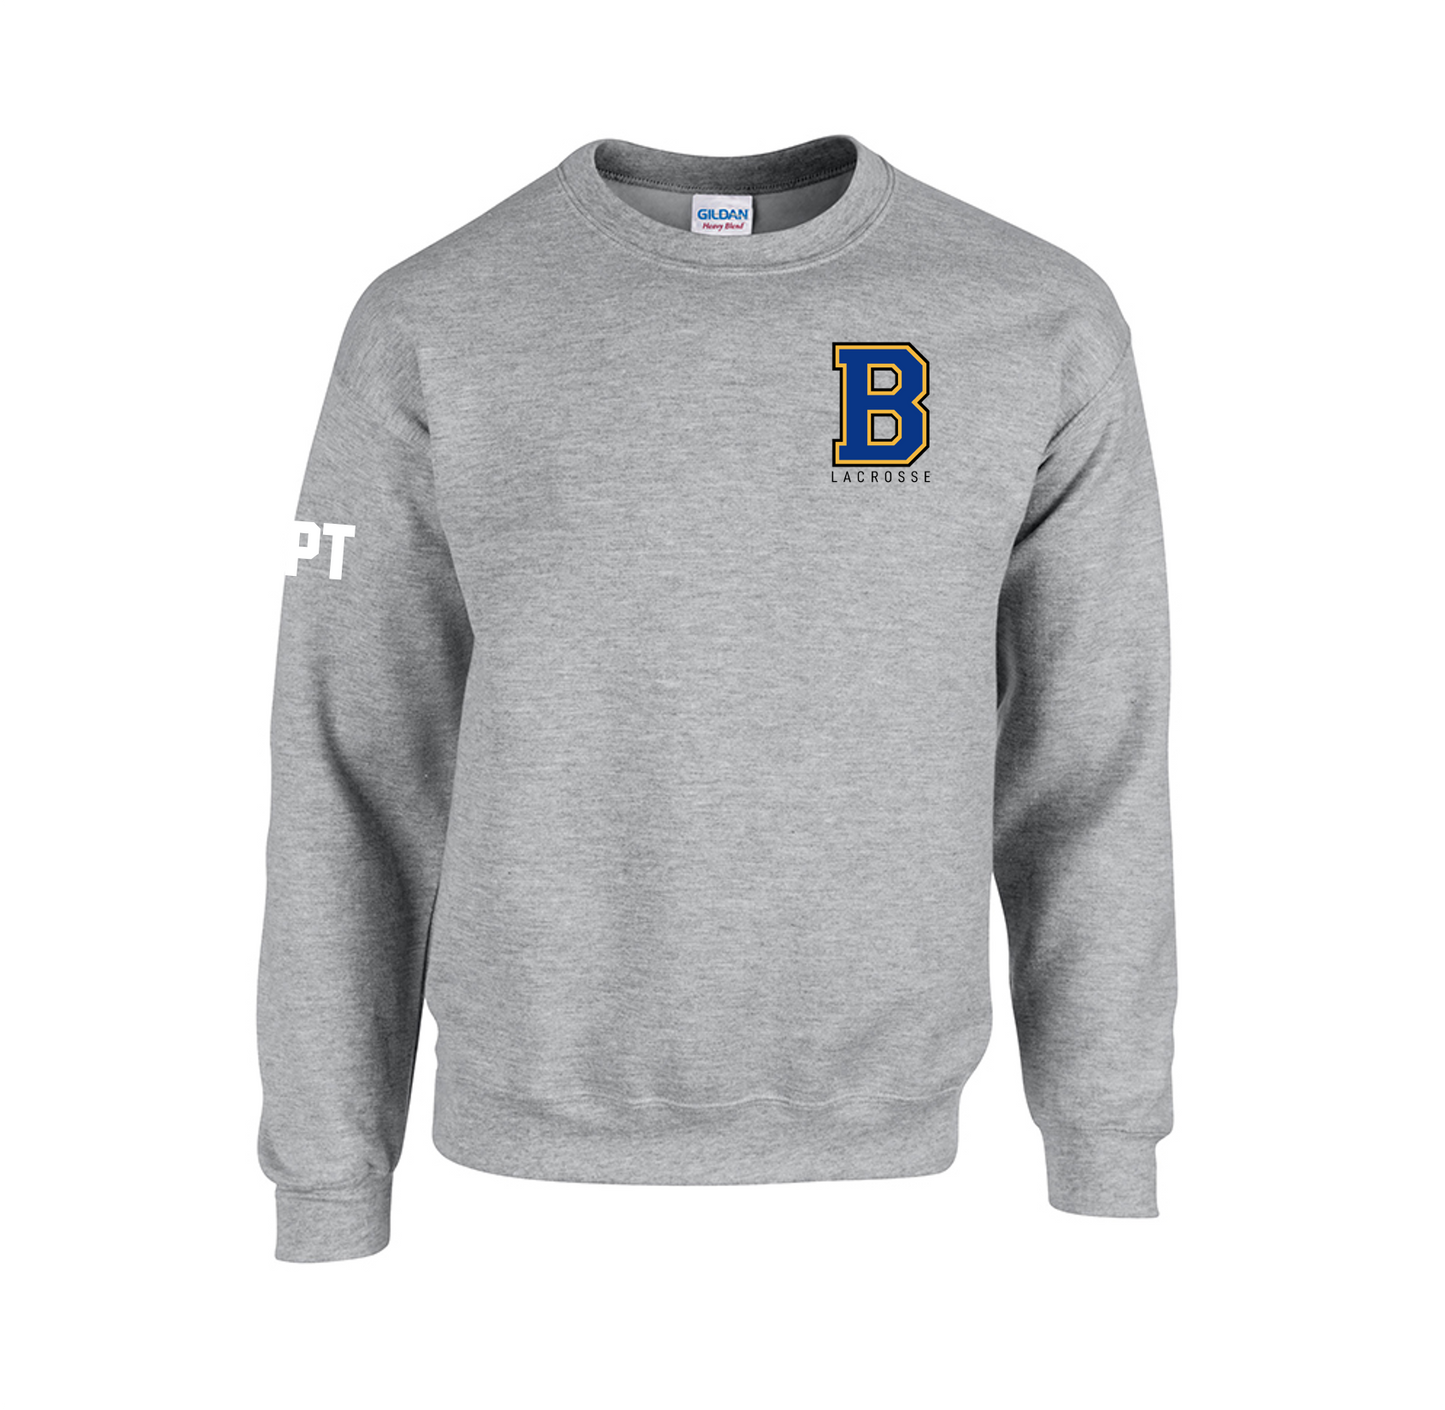 Bath Uni Lacrosse Sweatshirt